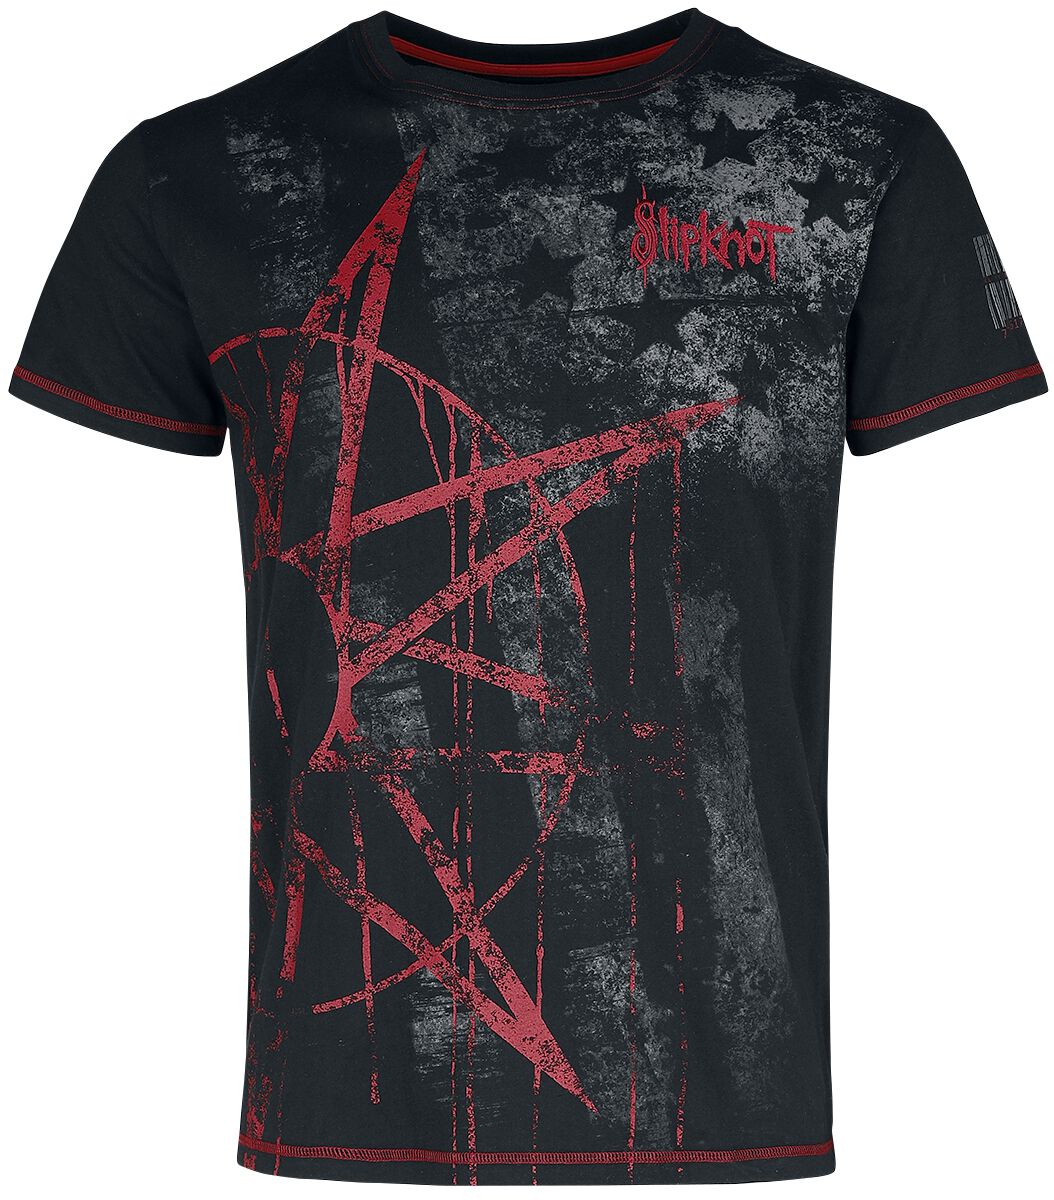 Slipknot T-Shirt - EMP Signature Collection - S bis 5XL - für Männer - Größe 3XL - schwarz  - EMP exklusives Merchandise!